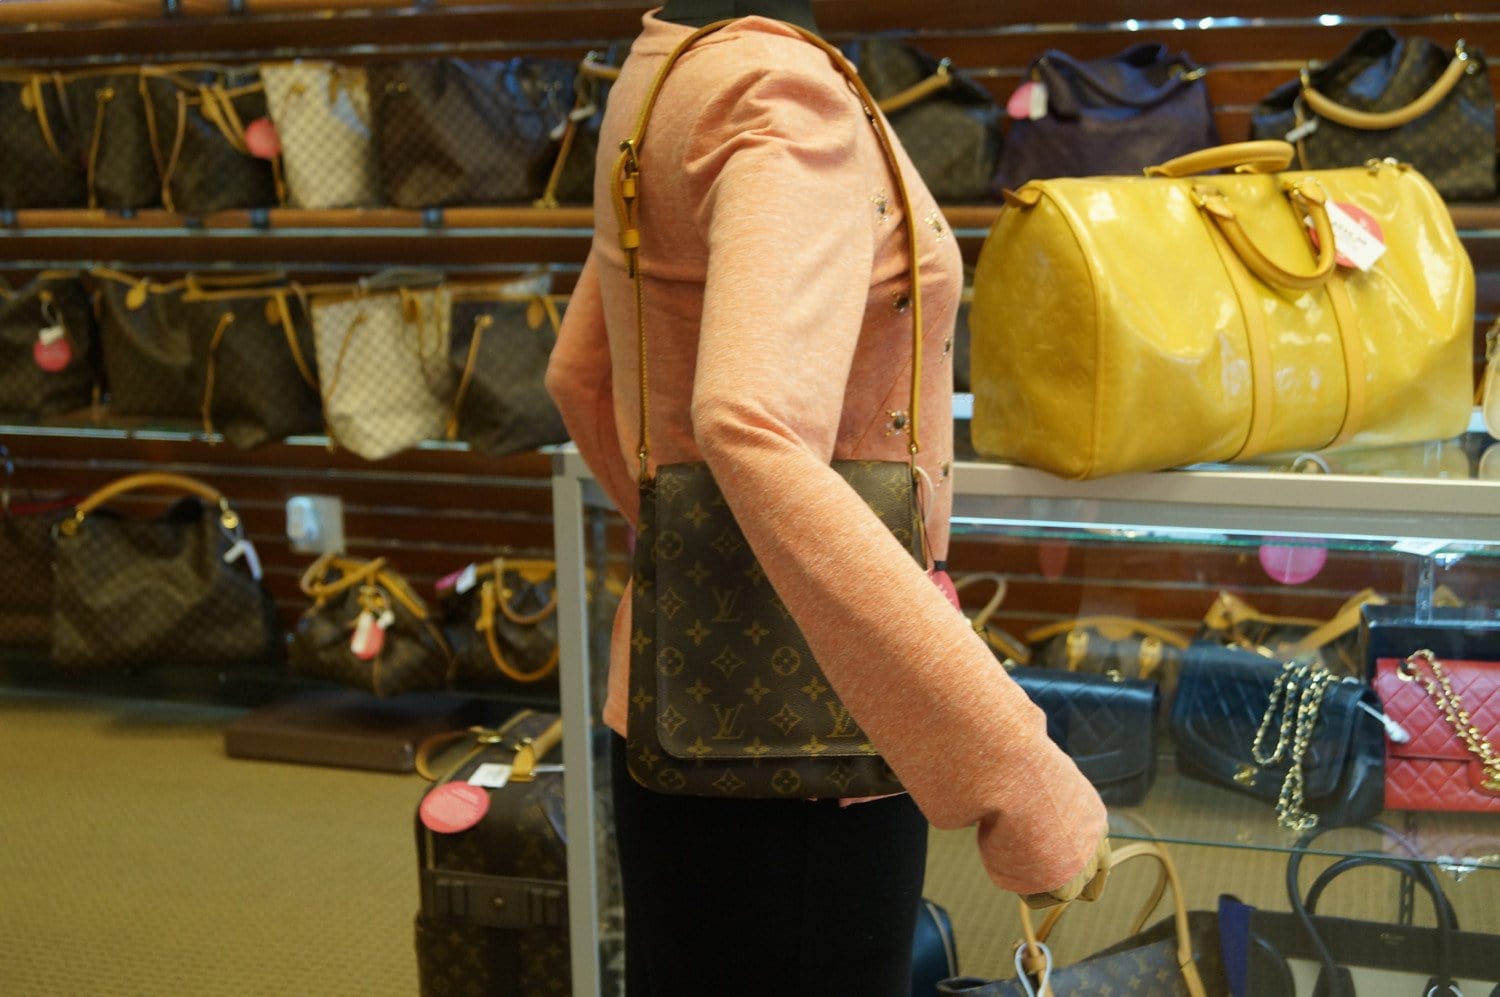 Louis Vuitton Musette Shoulder Bag(Brown)